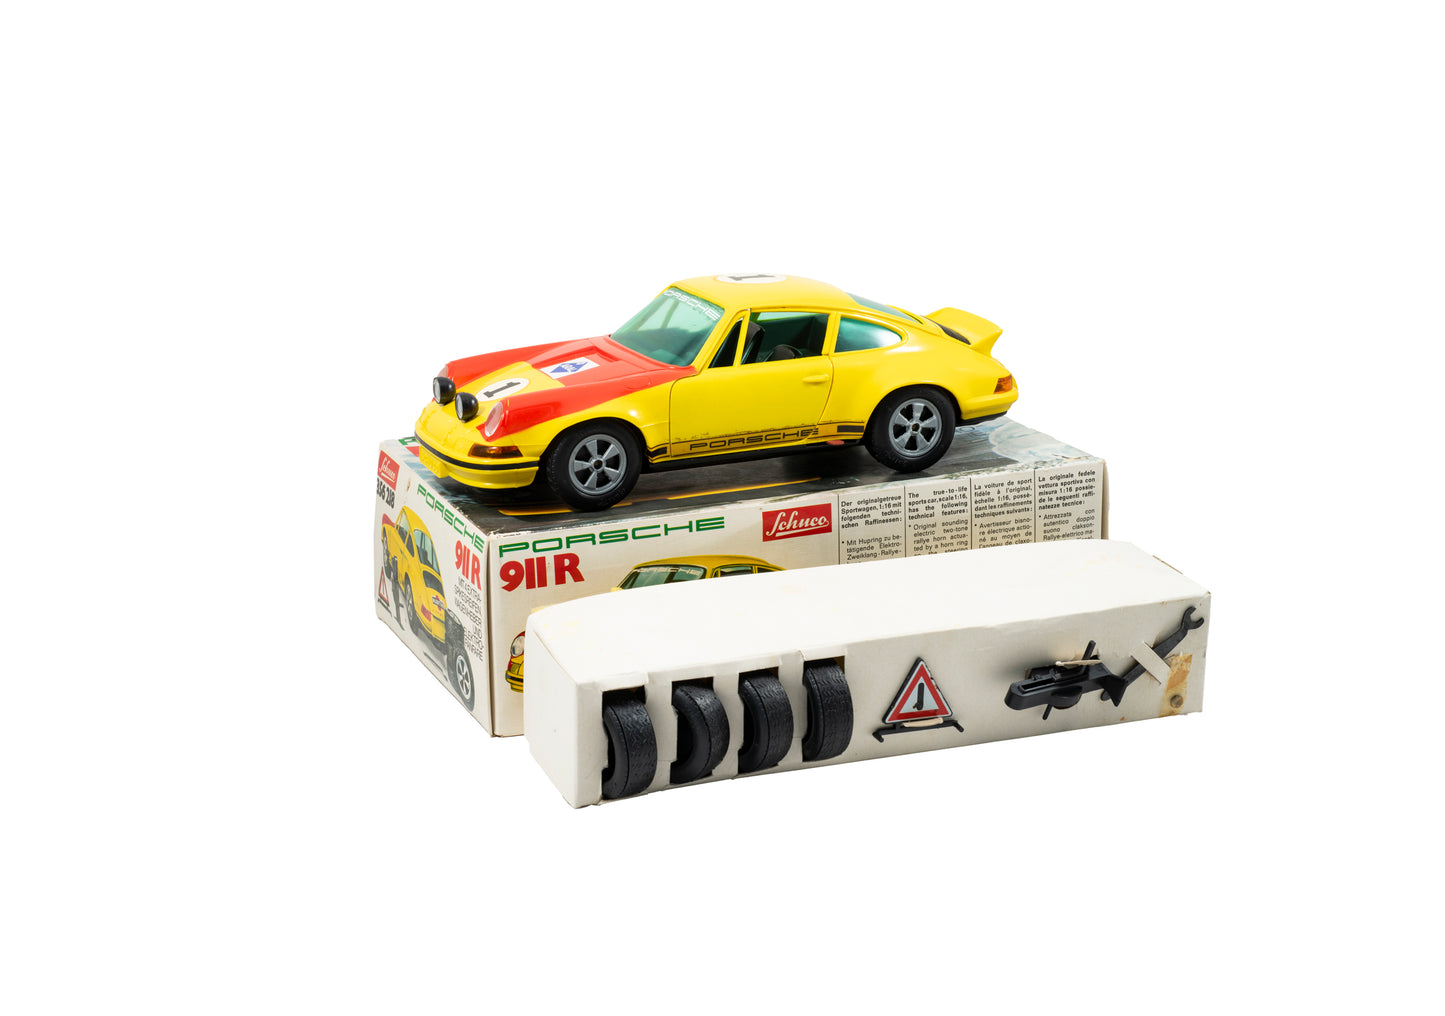 Porsche 911R Toy by Schuco